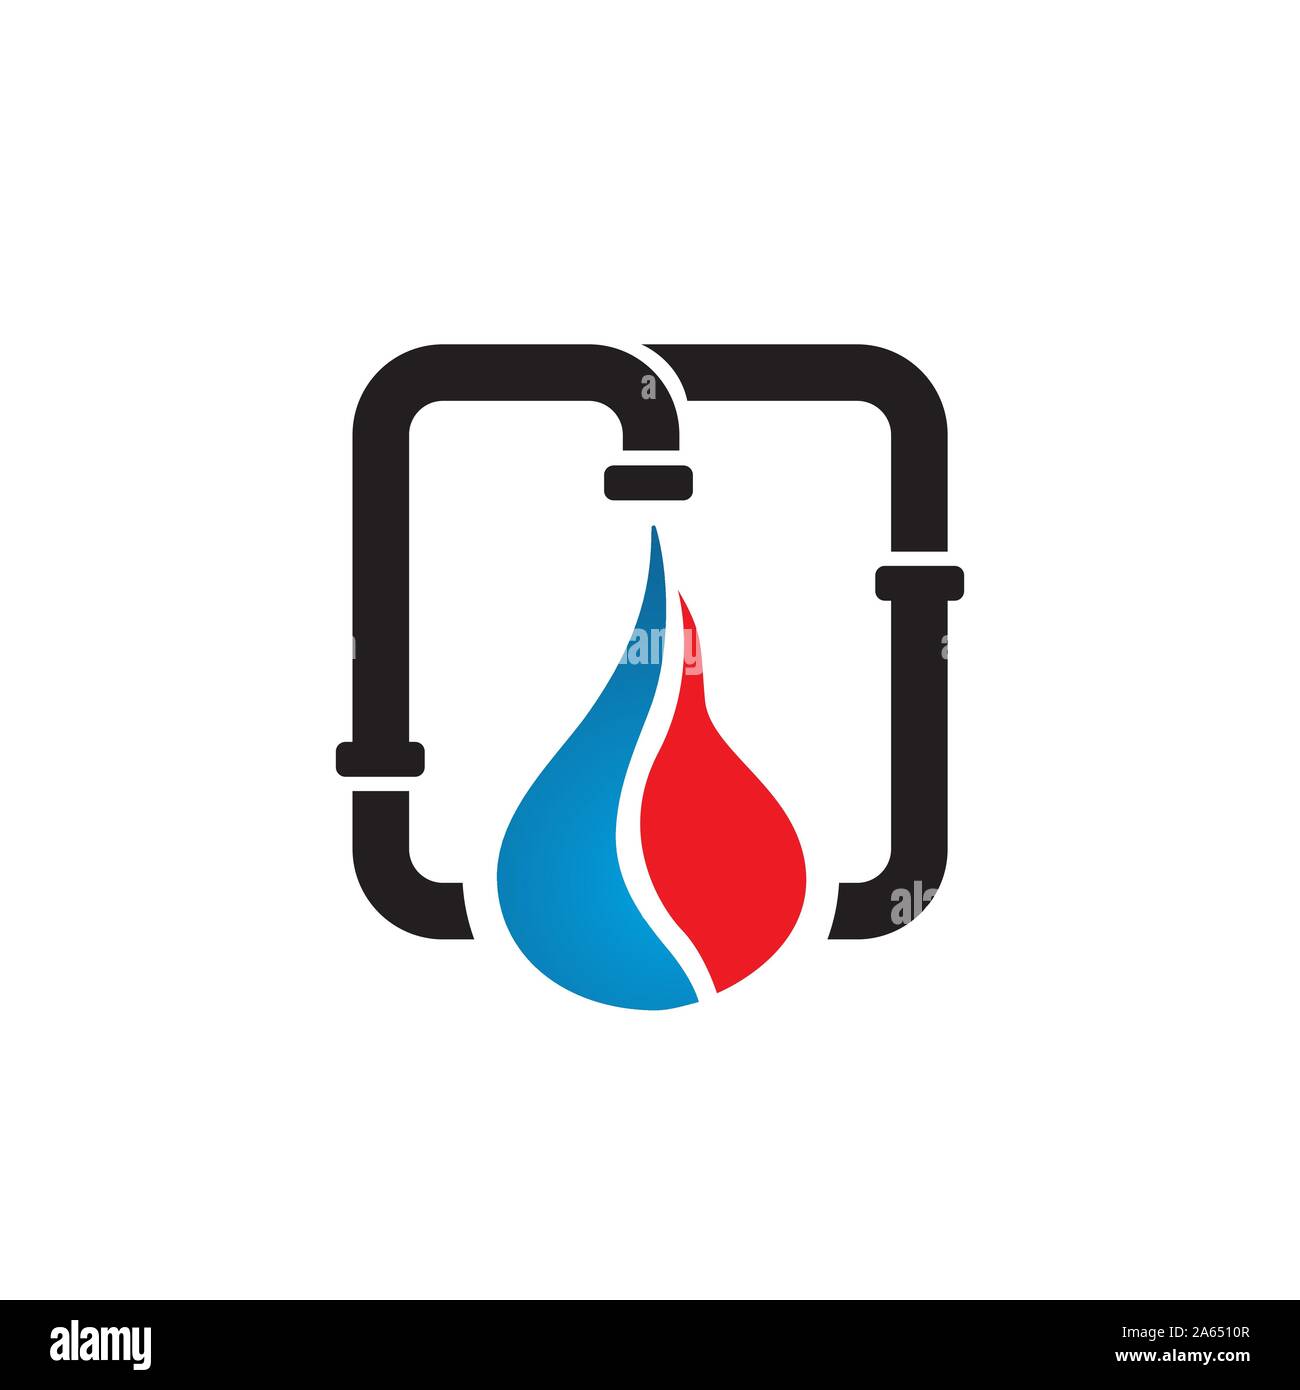 Sanitär logo Stock-Vektorgrafiken kaufen - Alamy